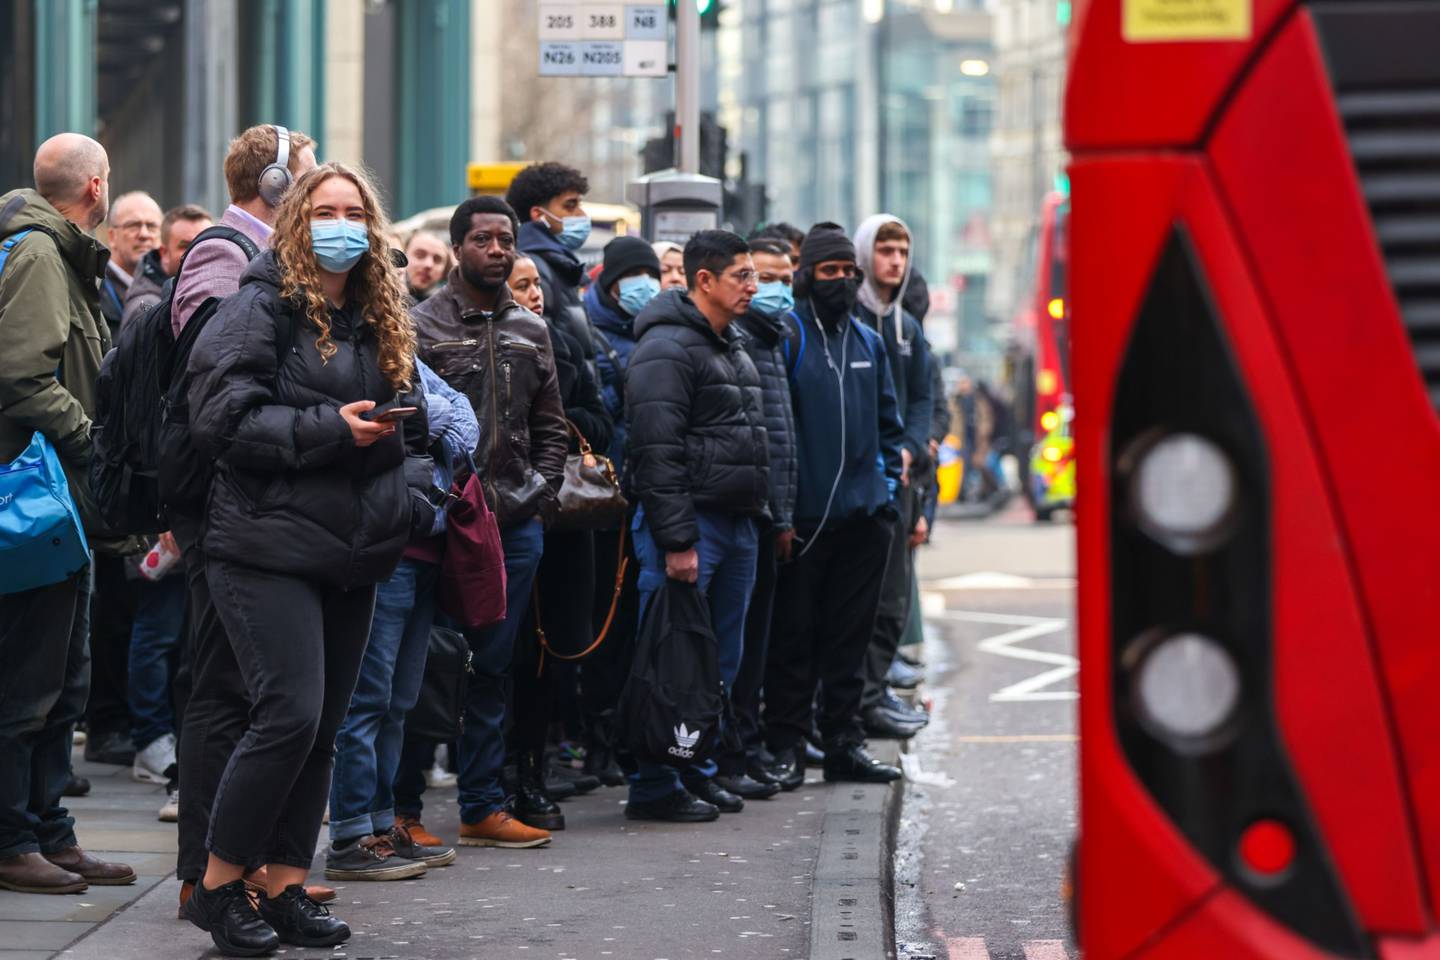 Viajeros esperan en una parada de autobús, durante en Londres, Reino Unido, el jueves 3 de marzo de 2022.